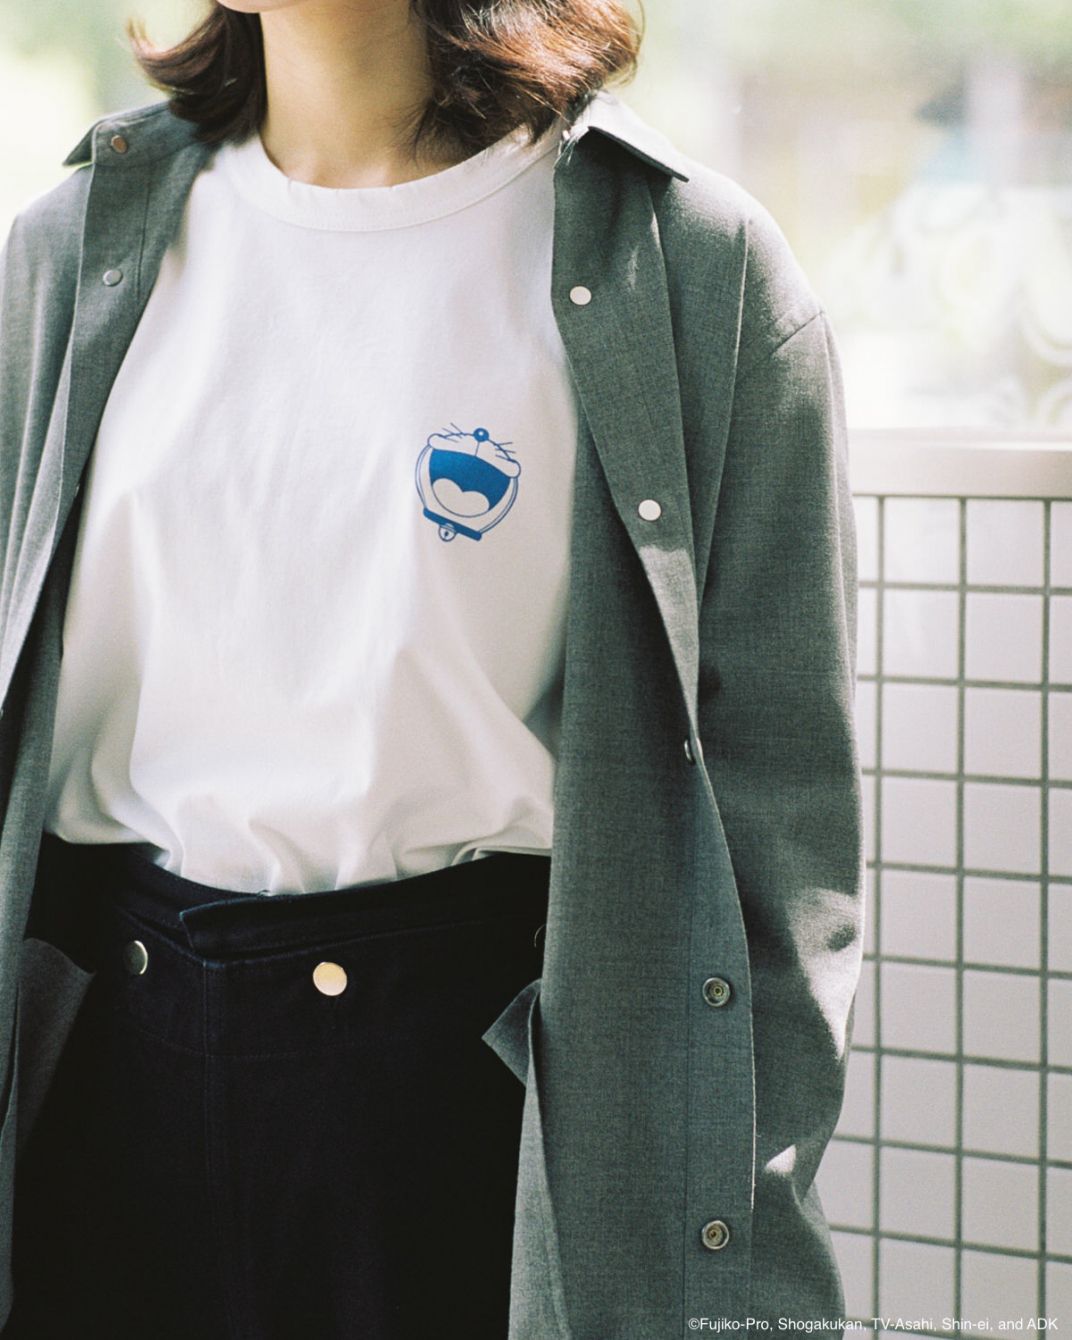 # 日本實驗服飾品牌 ALOYE × 國民動畫 哆啦 A 夢：推出異次元跨越聯名系列。 7